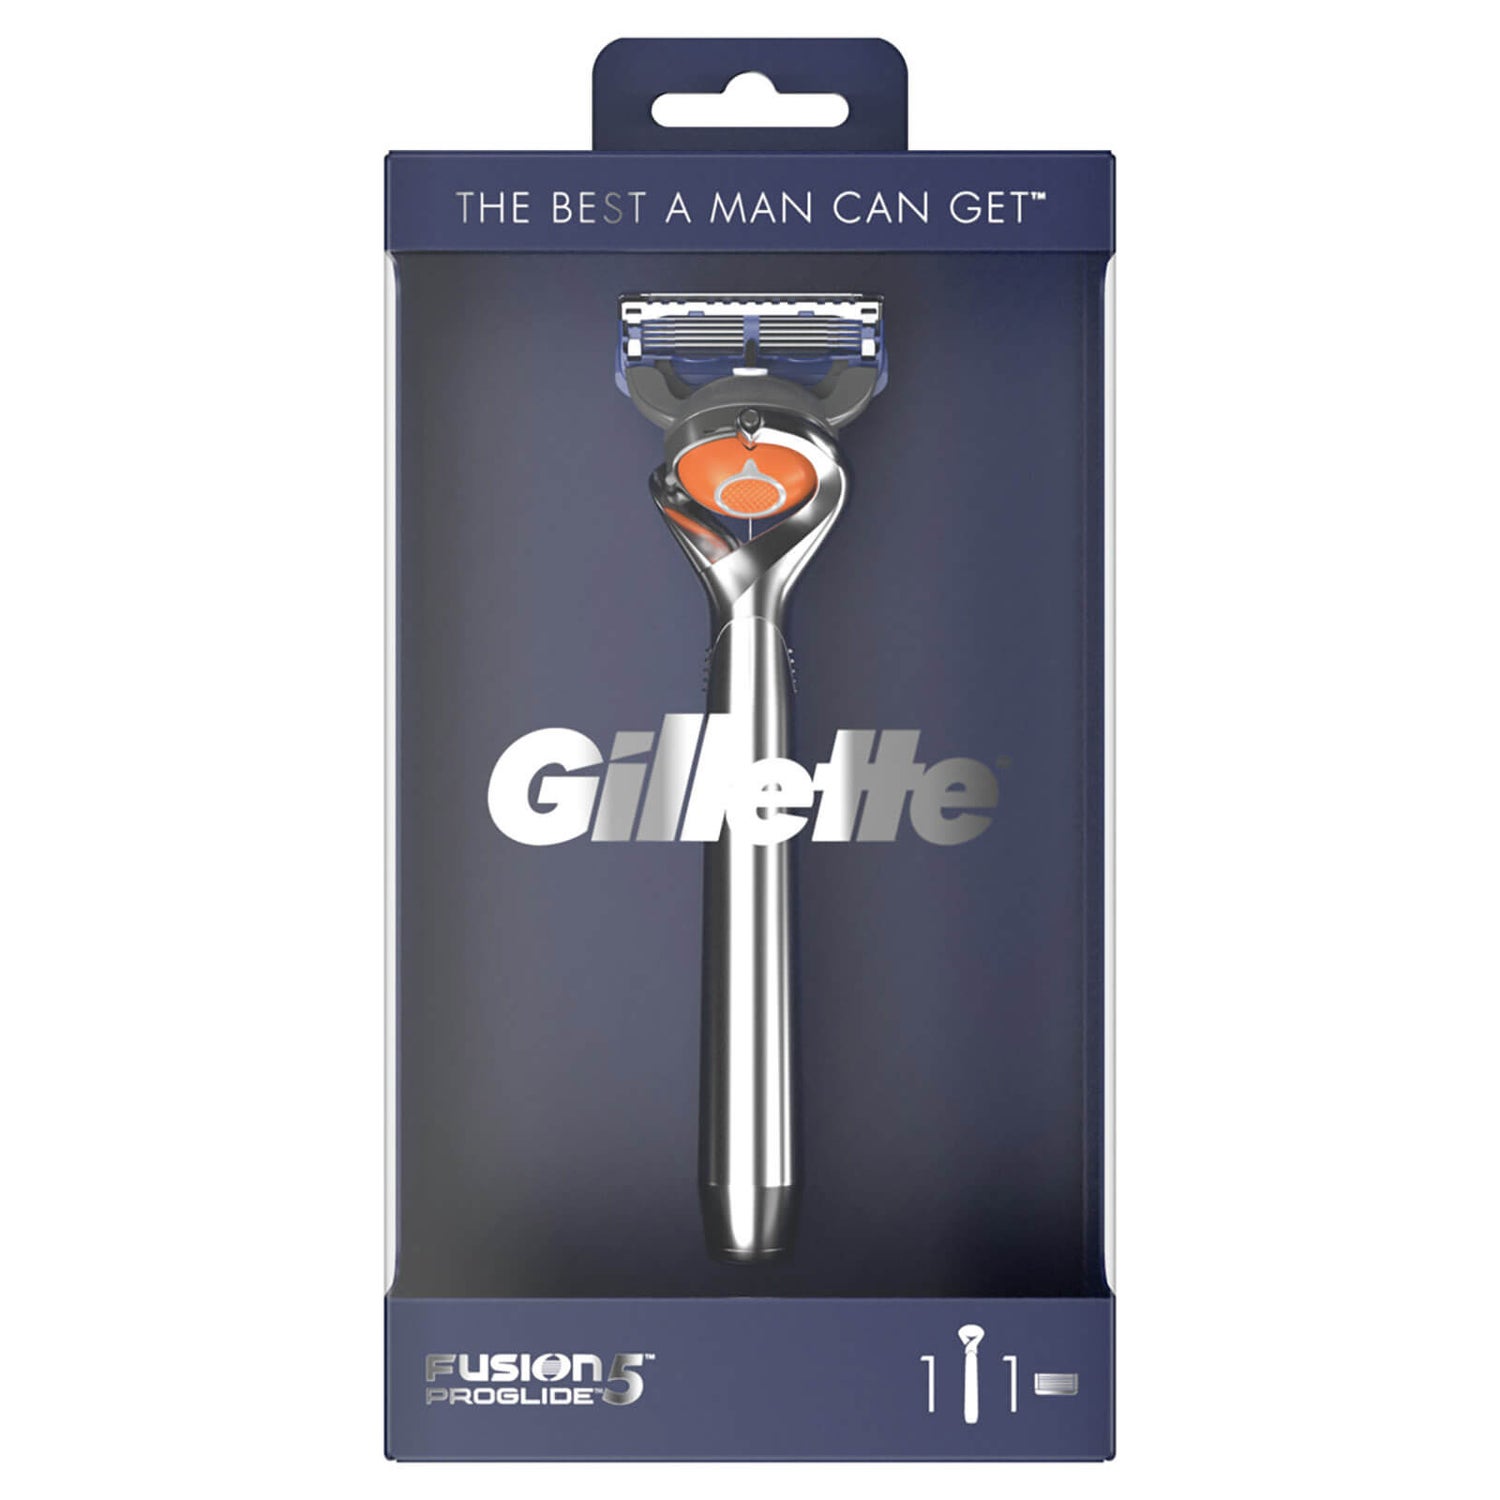 Limited Edition Gillette Fusion5 ProGlide Razor - Chrome